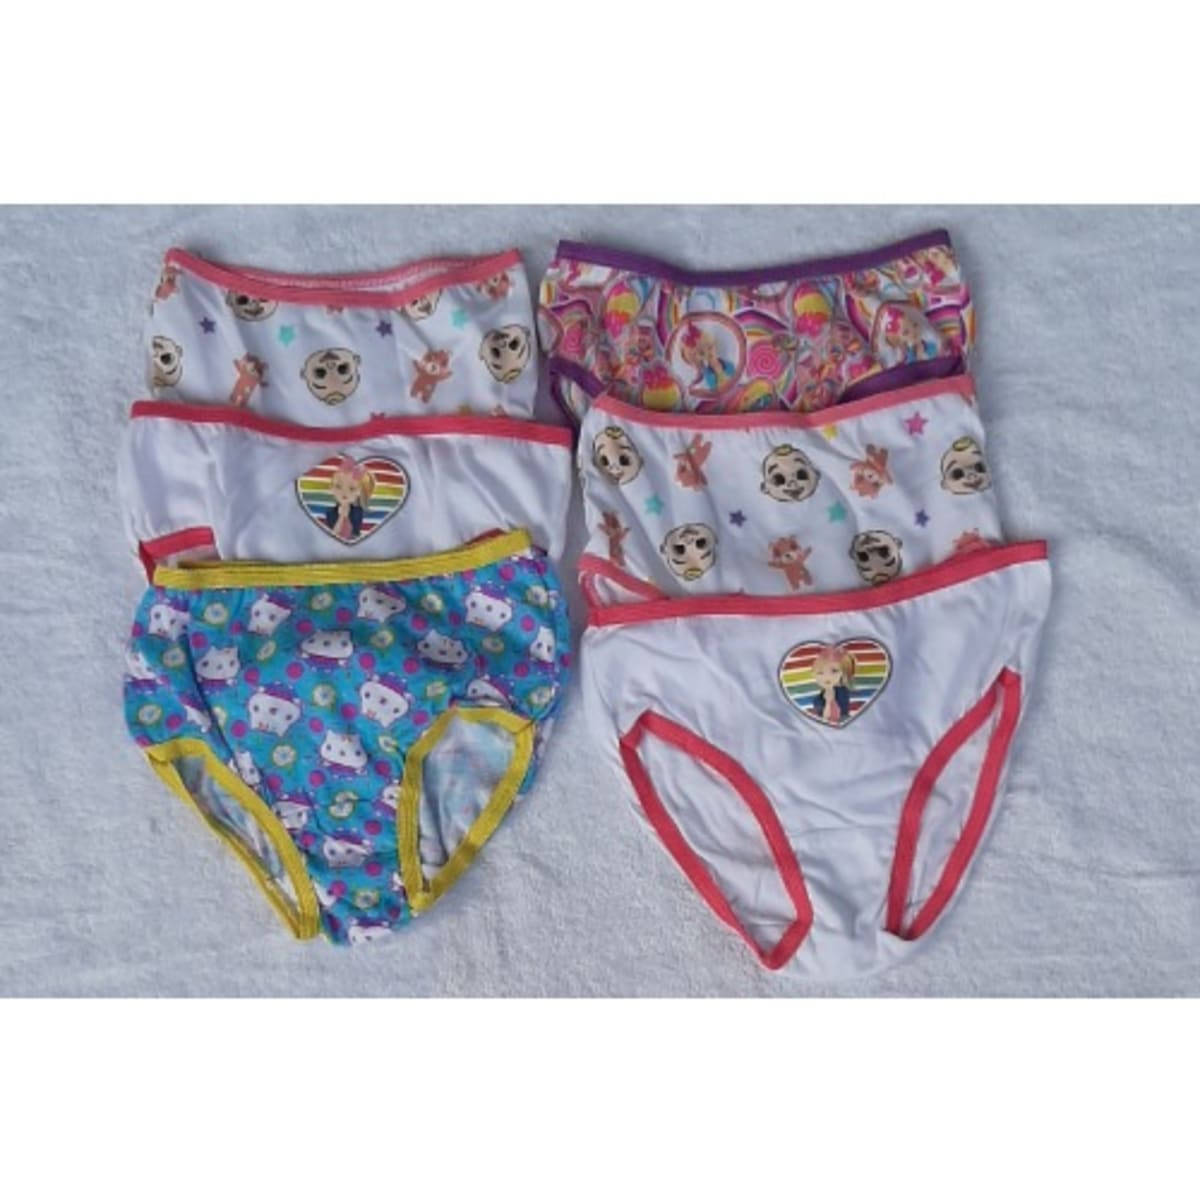 A&S Girls Underwear - 6 pieces